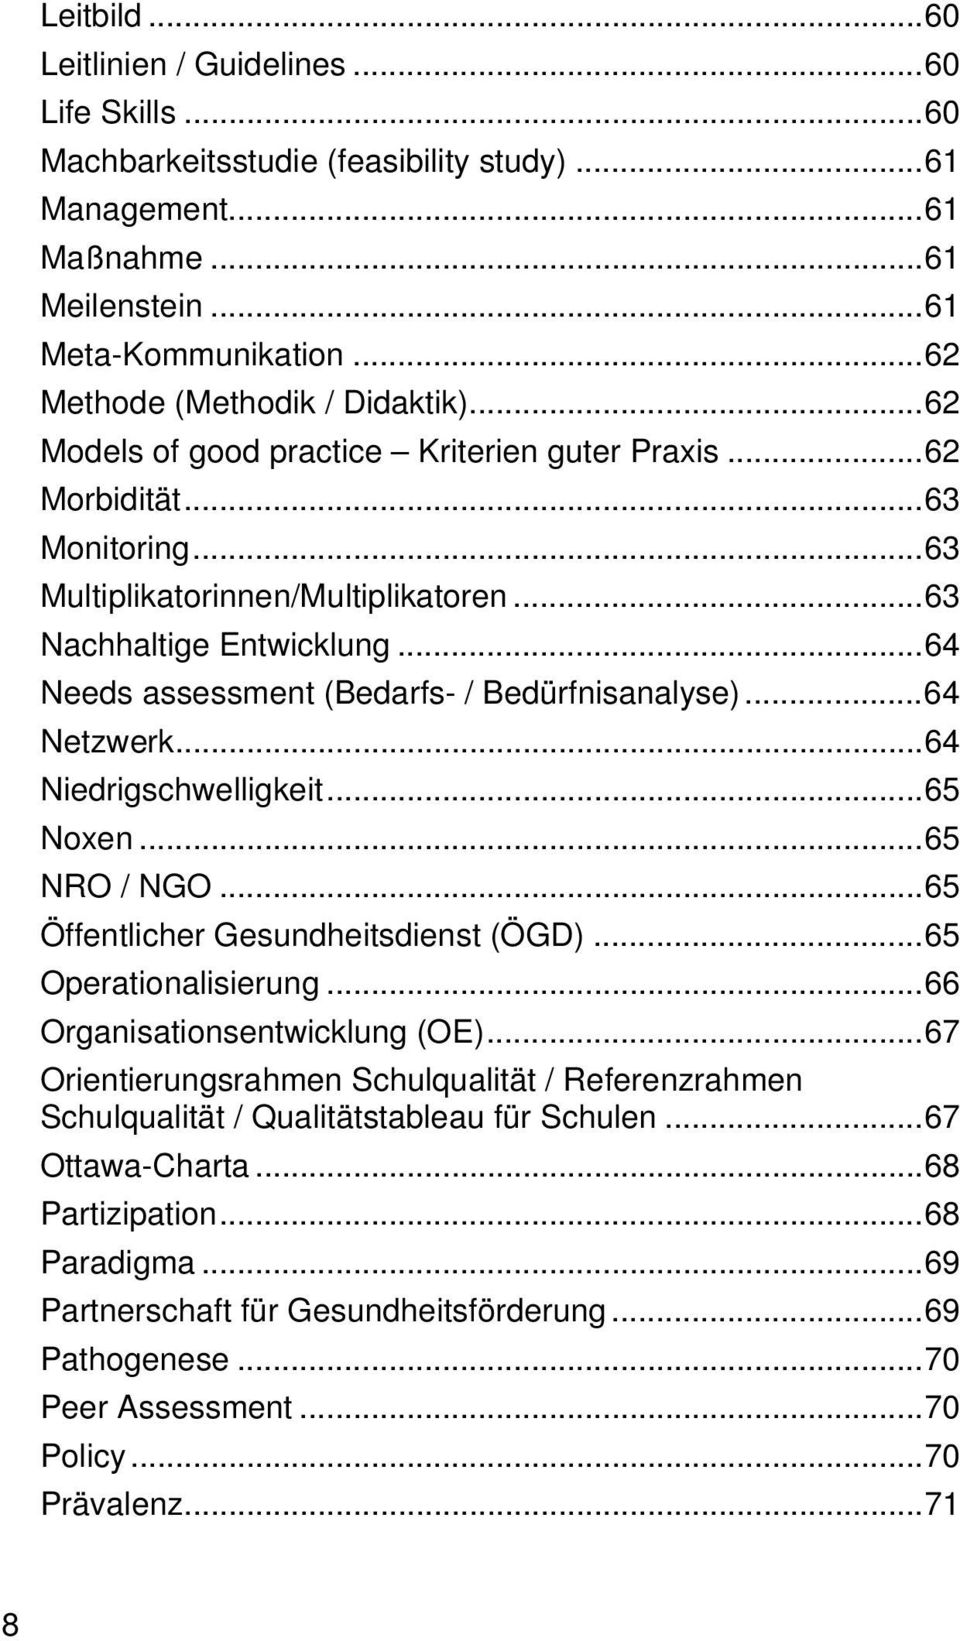 .. 64 Needs assessment (Bedarfs- / Bedürfnisanalyse)... 64 Netzwerk... 64 Niedrigschwelligkeit... 65 Noxen... 65 NRO / NGO... 65 Öffentlicher Gesundheitsdienst (ÖGD)... 65 Operationalisierung.